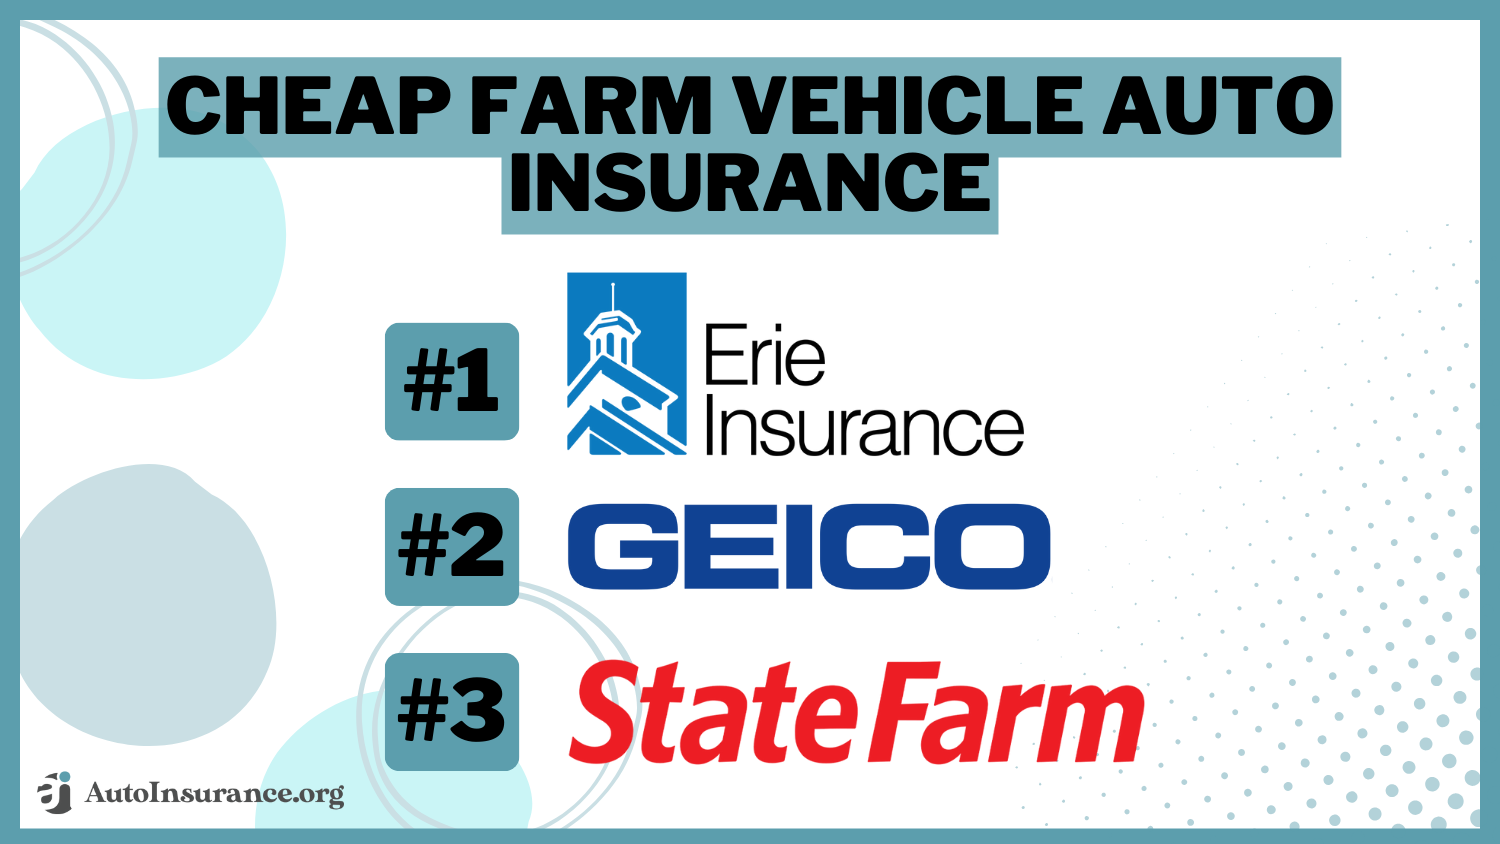 Cheap Farm Vehicle Auto Insurance: Erie, Geico, State Farm